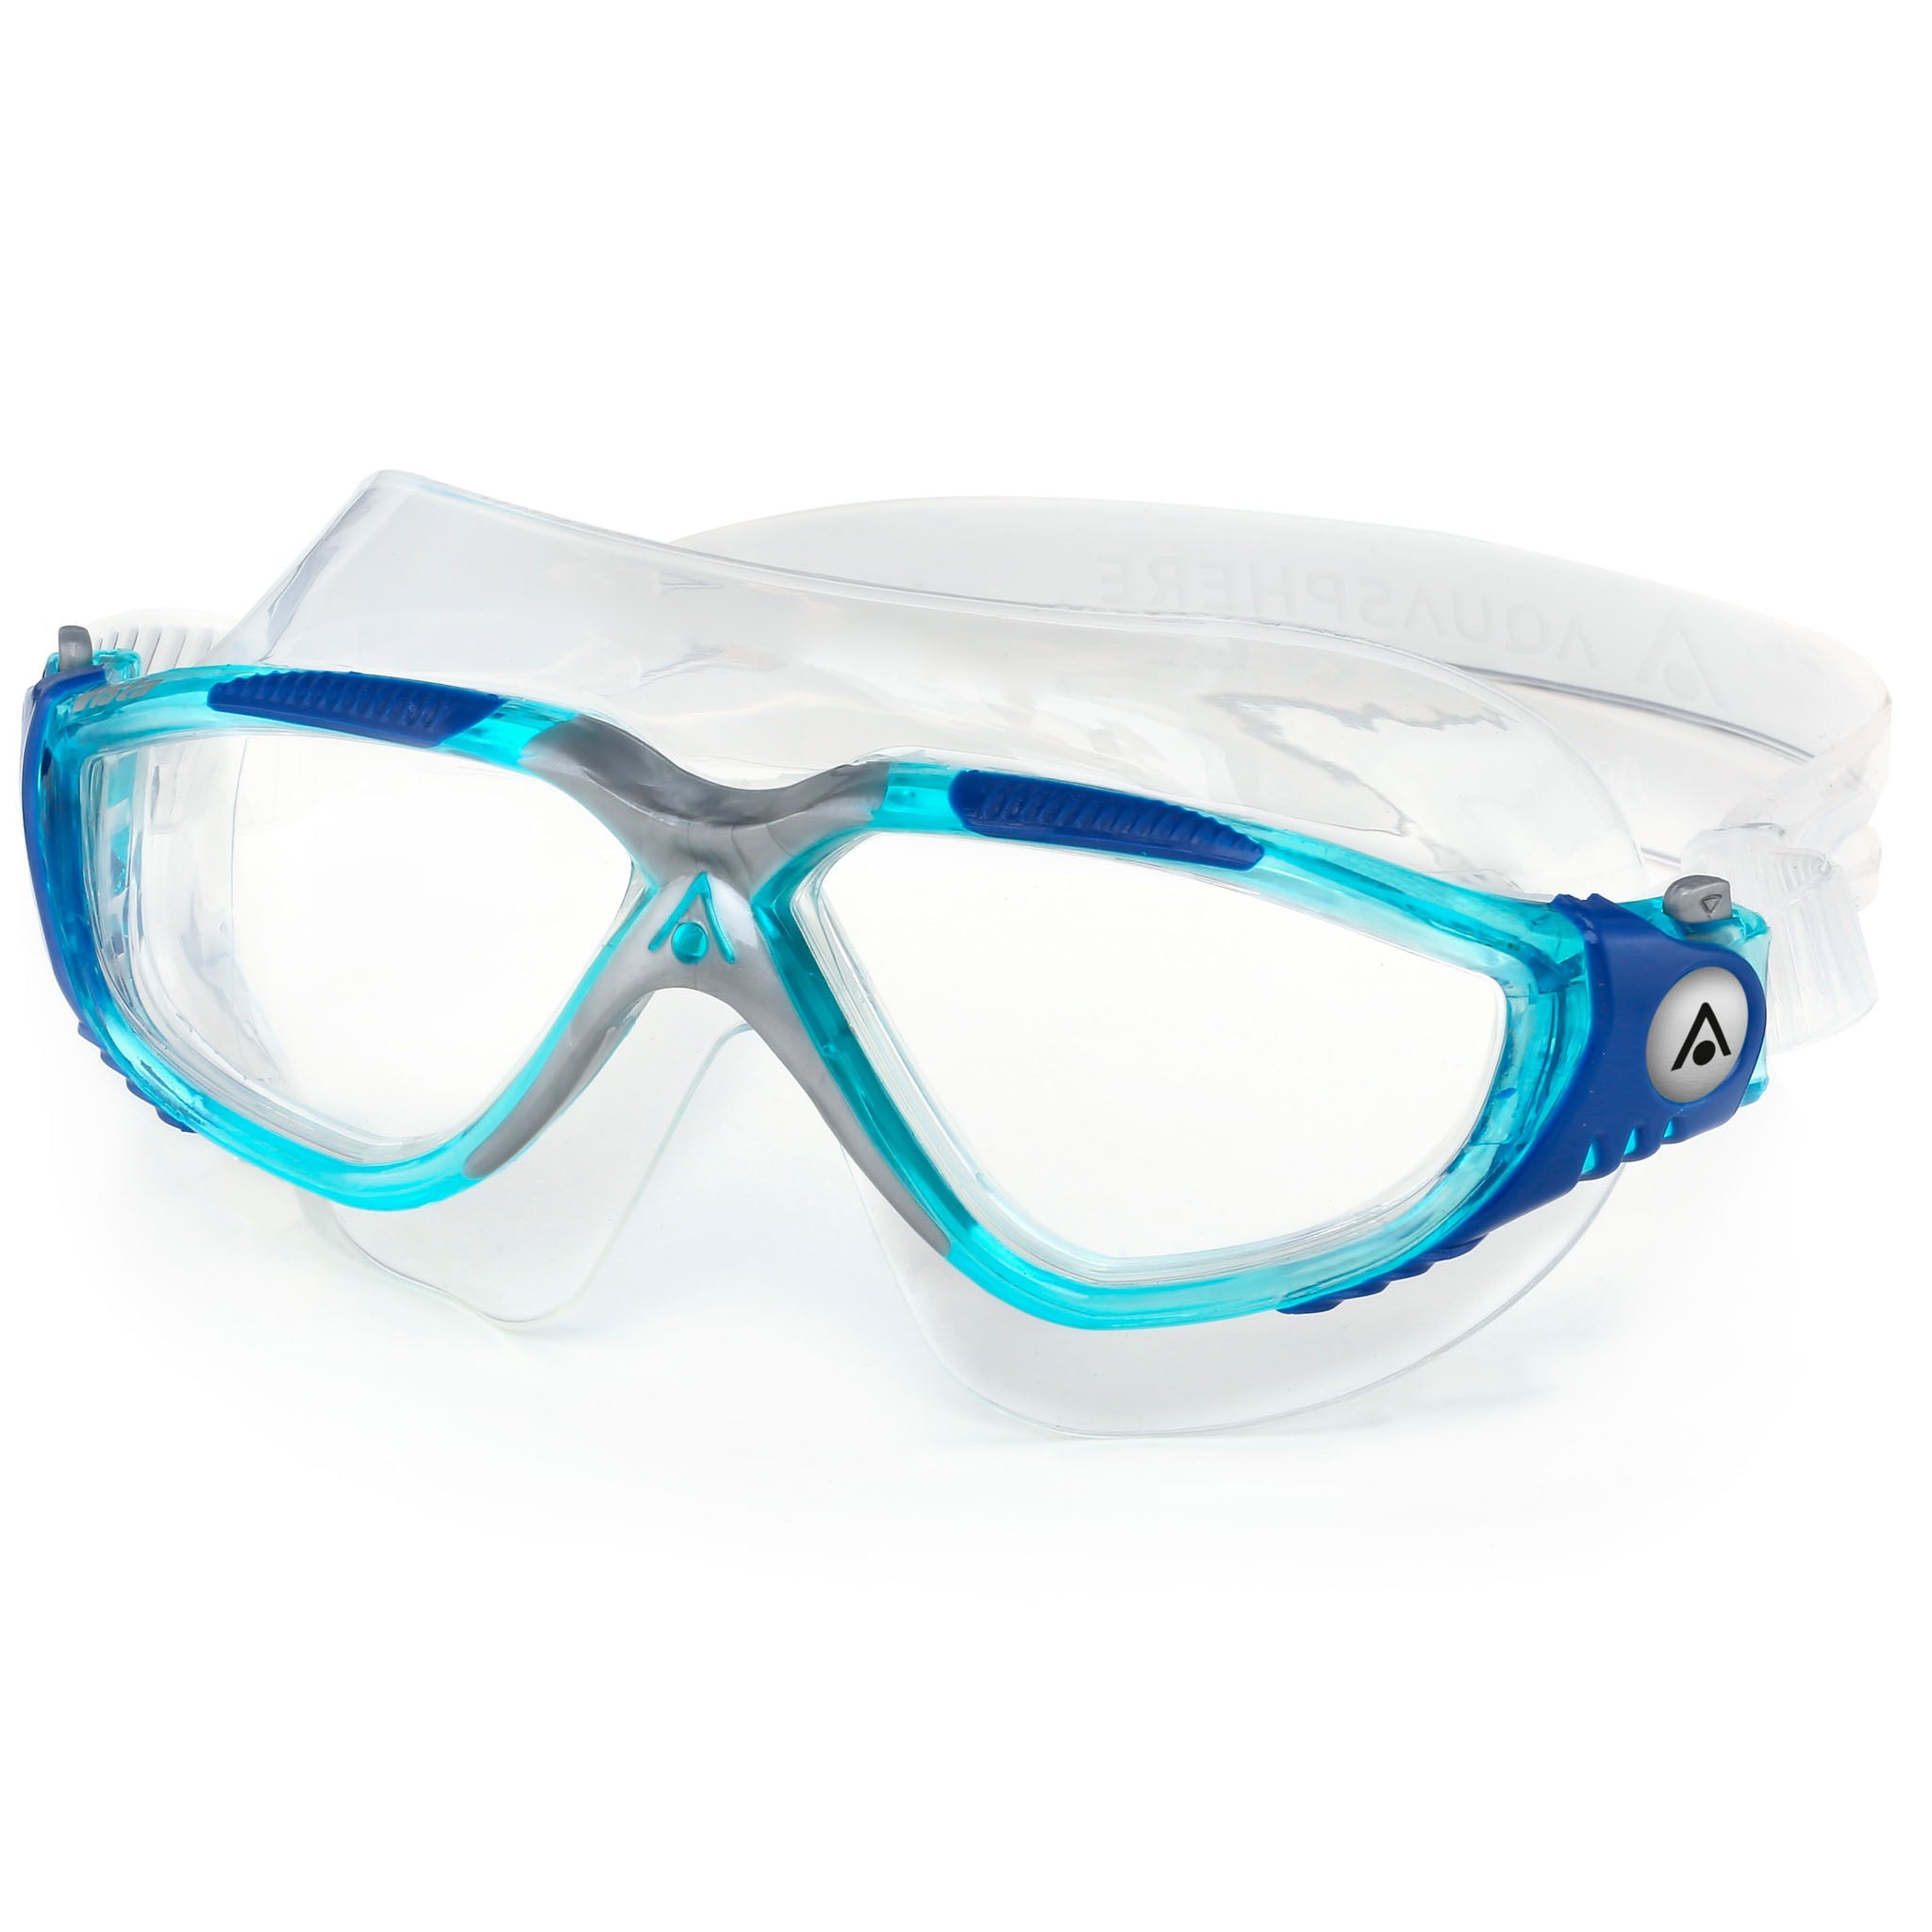 Aquasphere Vista Swim Goggles Mask - Aqua Blue